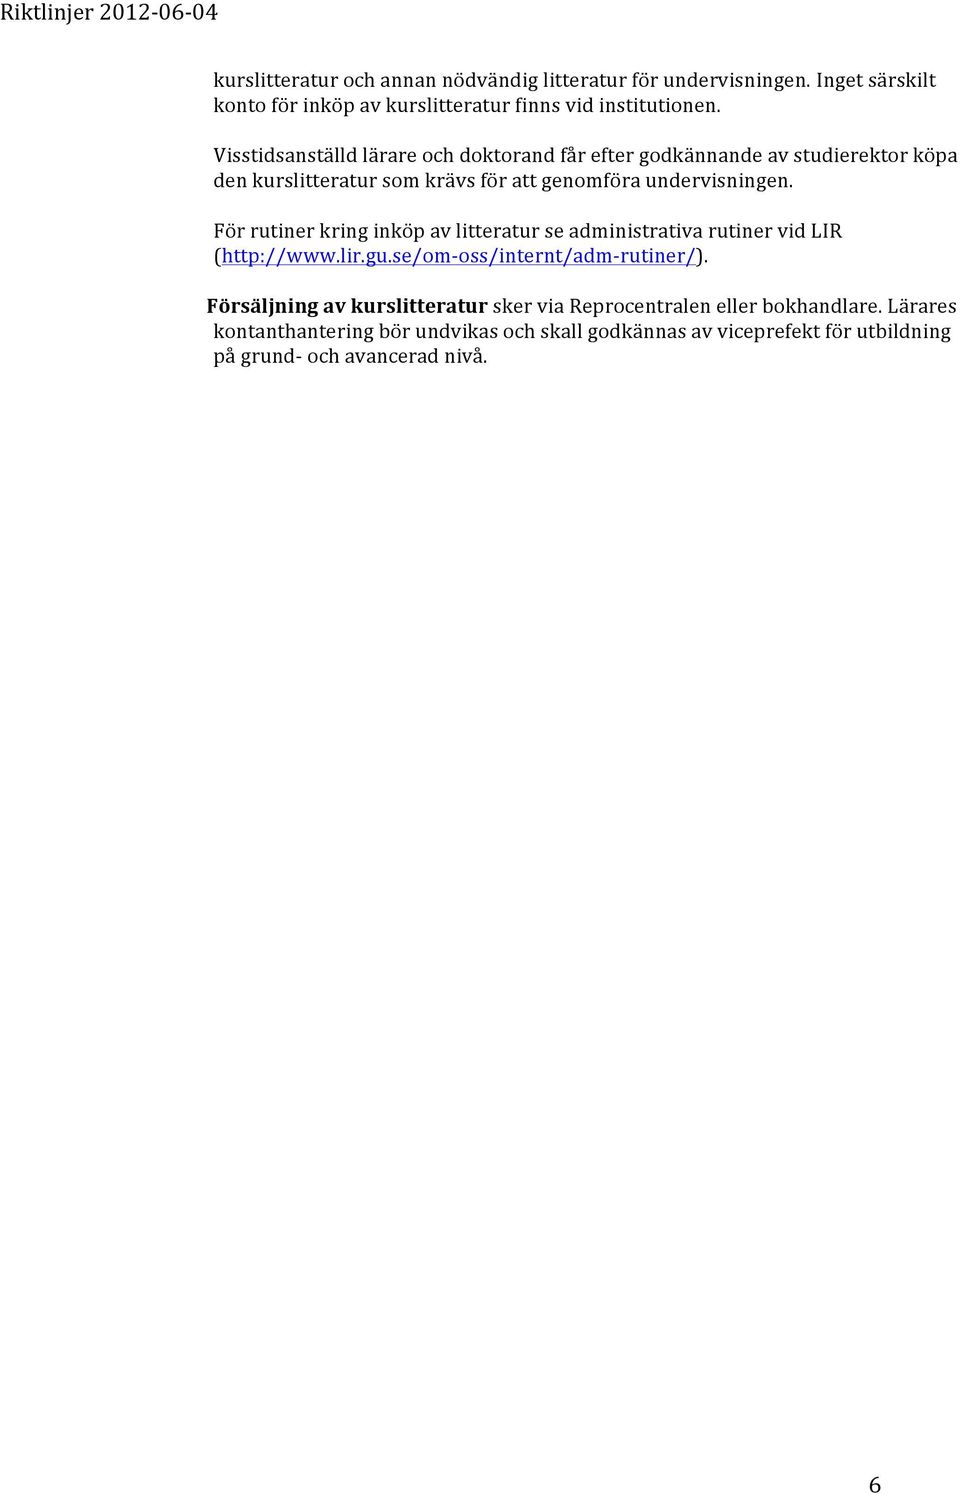 För rutiner kring inköp av litteratur se administrativa rutiner vid LIR (http://www.lir.gu.se/om- oss/internt/adm- rutiner/).